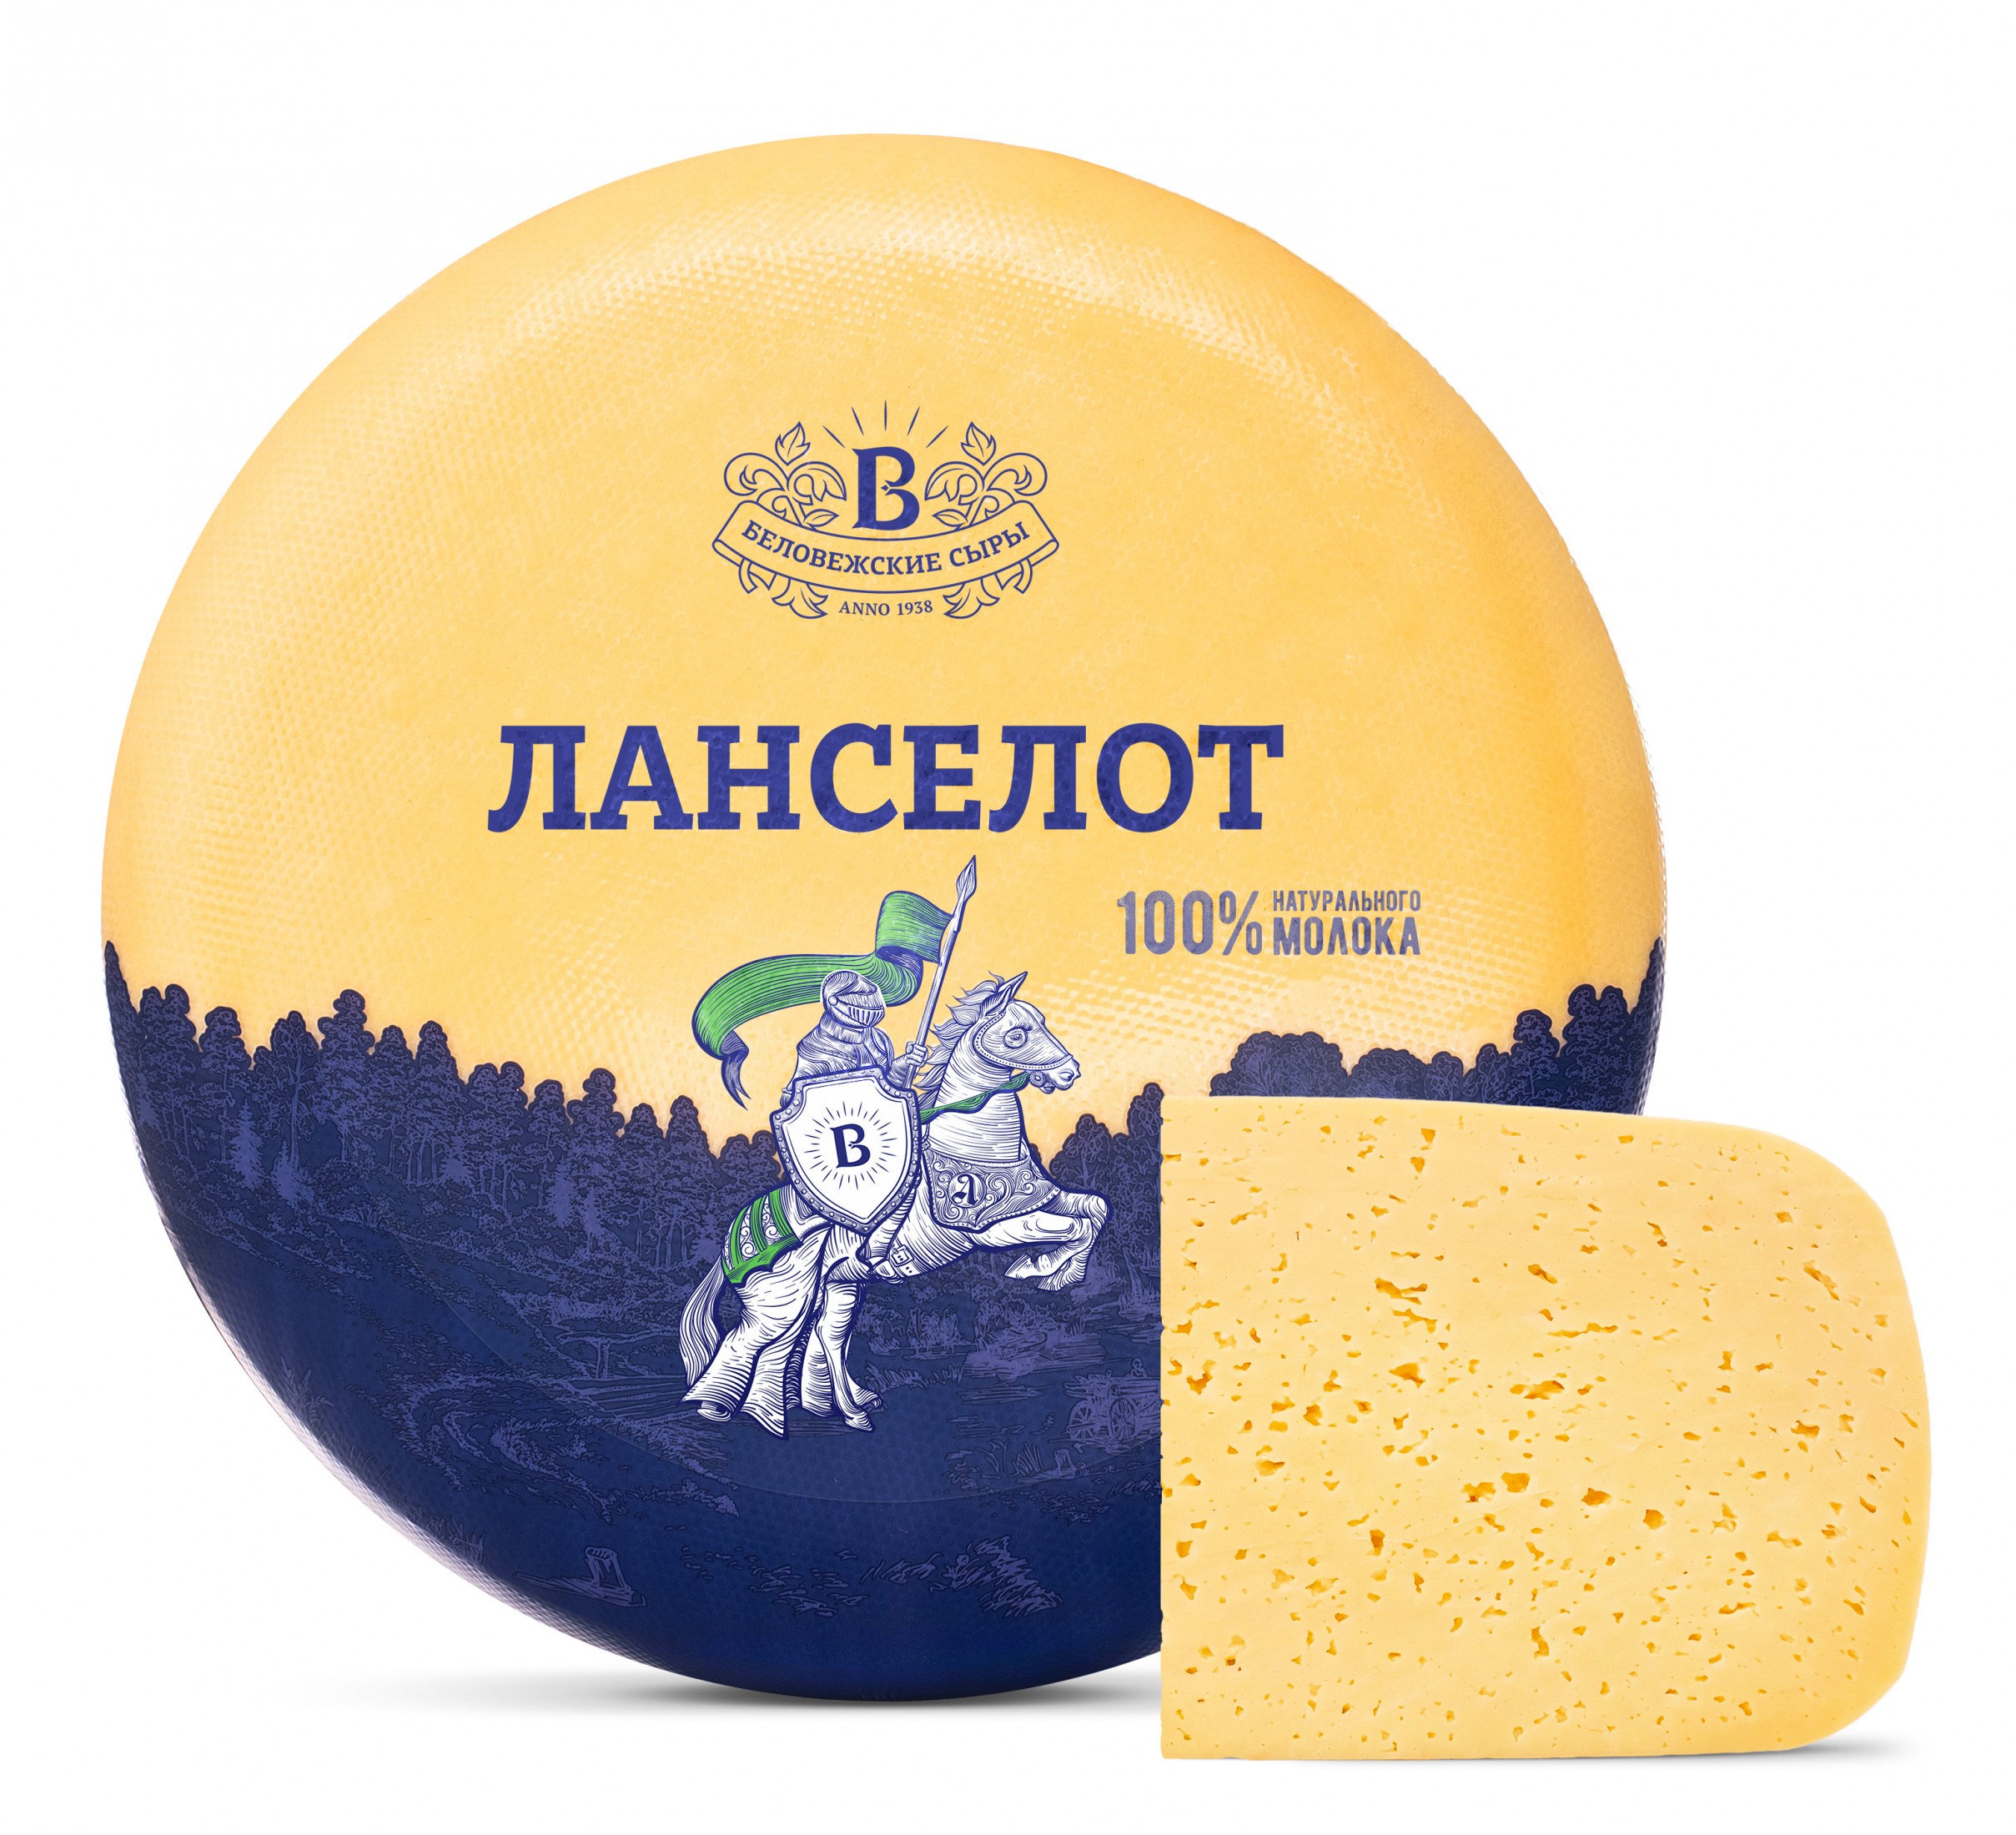 Сыр "Ланселот" с ароматом топленого молока | Интернет-магазин Gostpp